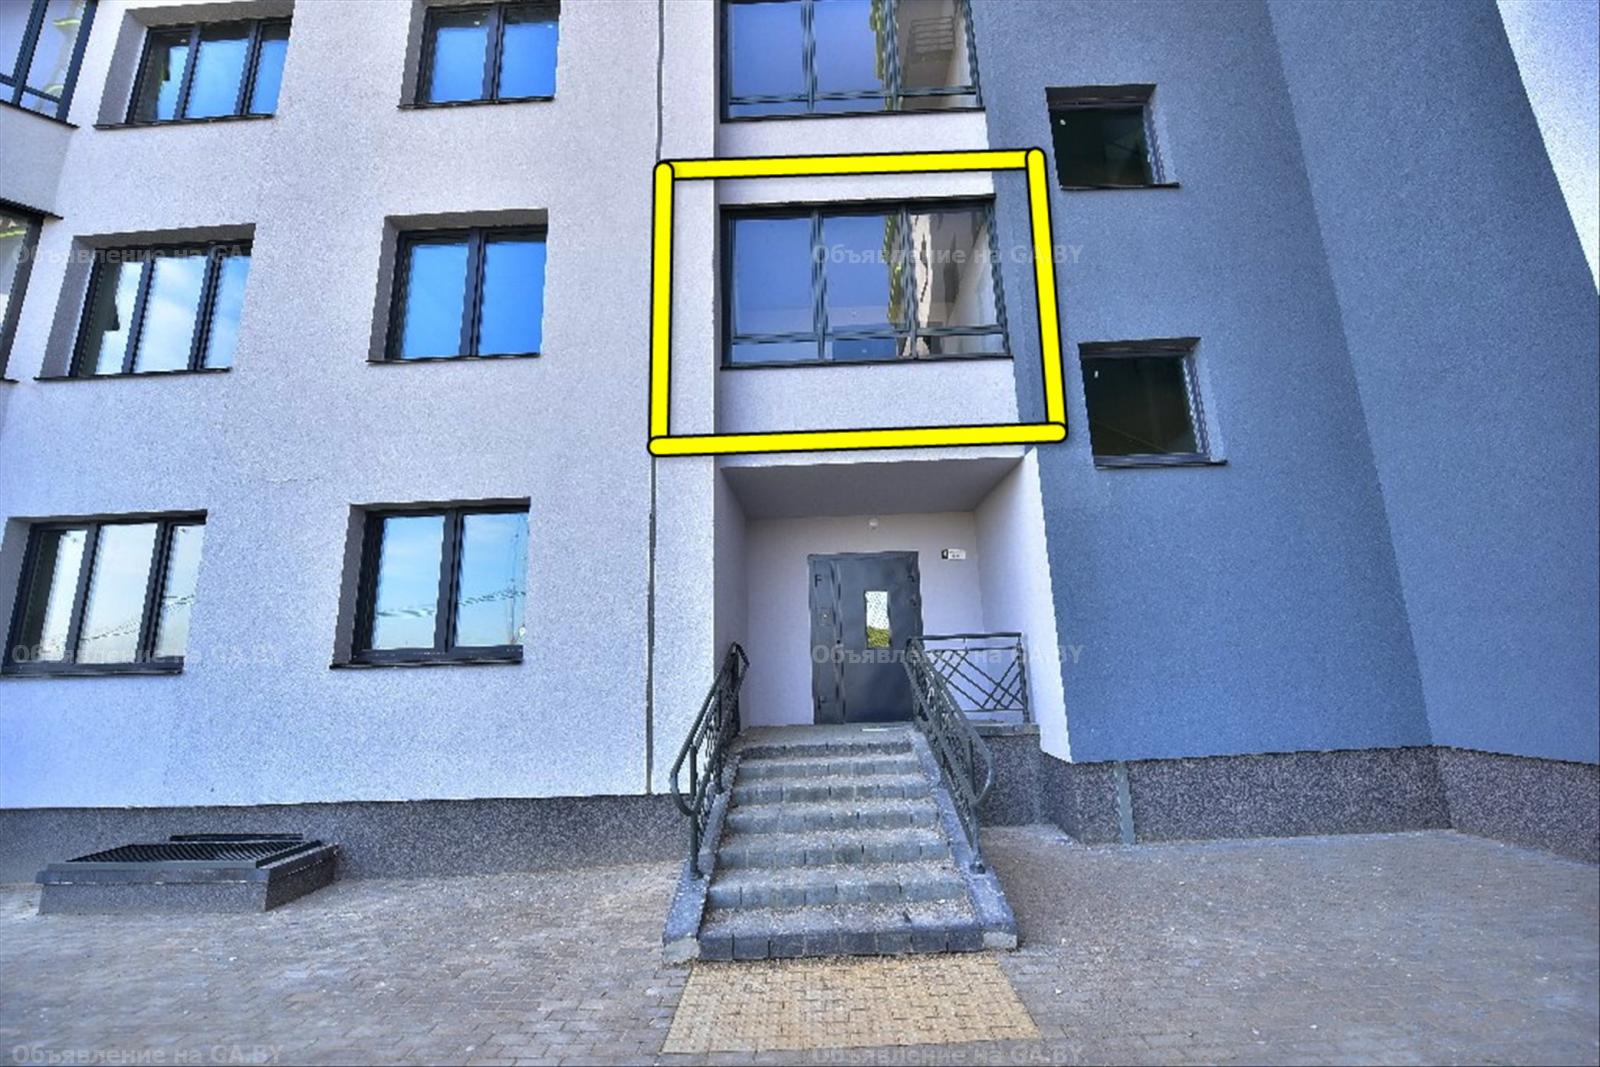 Продам Продам 2-комнатную квартиру в Минске, Игуменский тракт 15  - GA.BY